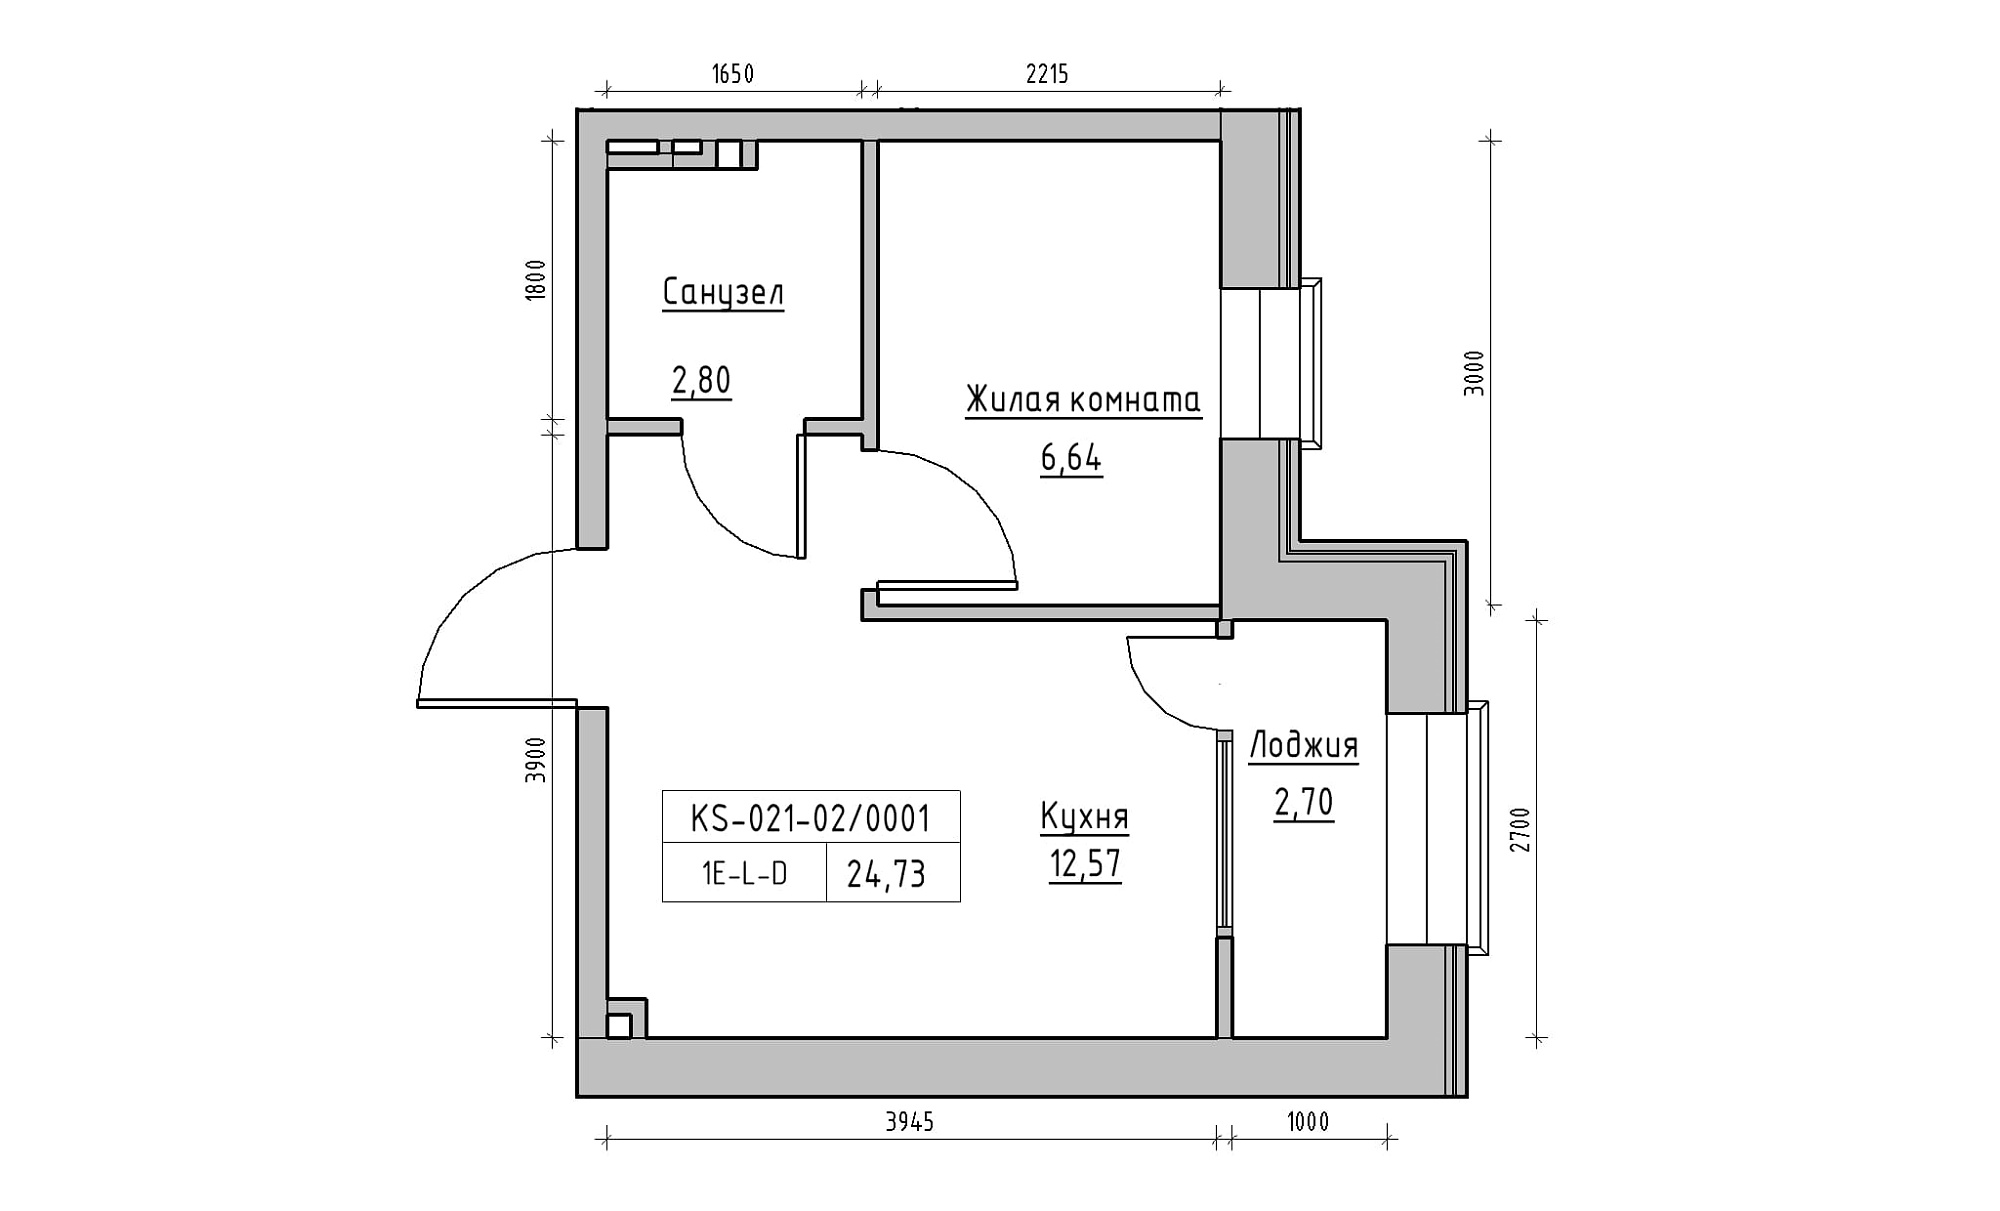 Планування 1-к квартира площею 24.73м2, KS-021-02/0001.